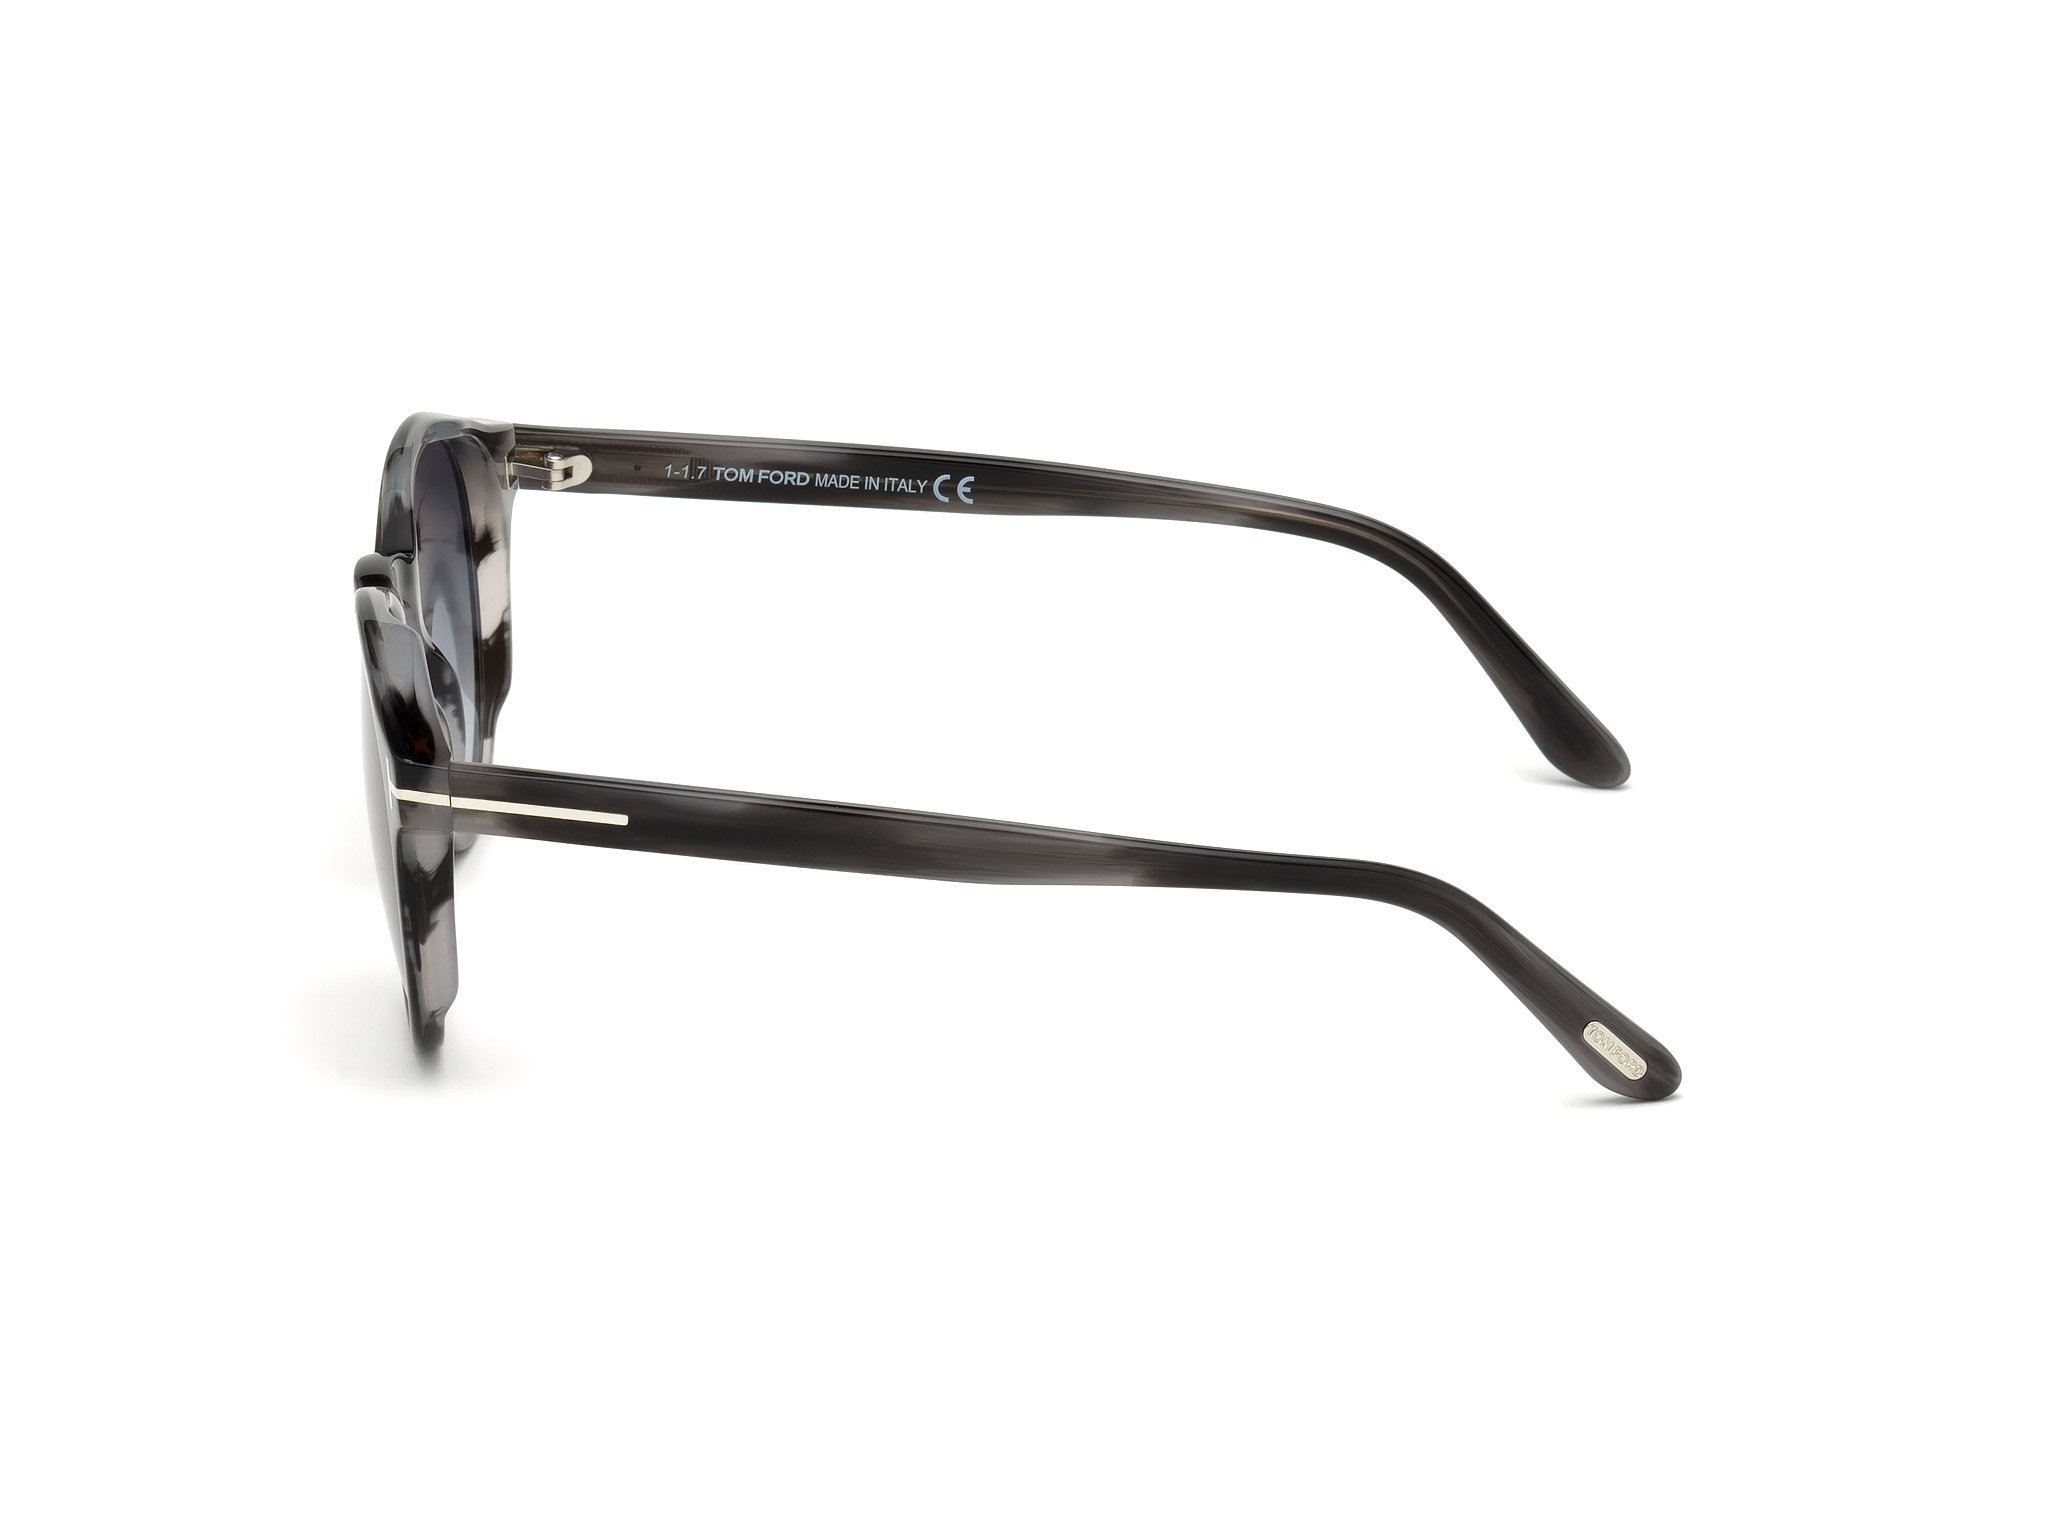 Das Bild zeigt die Sonnenbrille FT0591 20B von der Marke Tom Ford in grau.